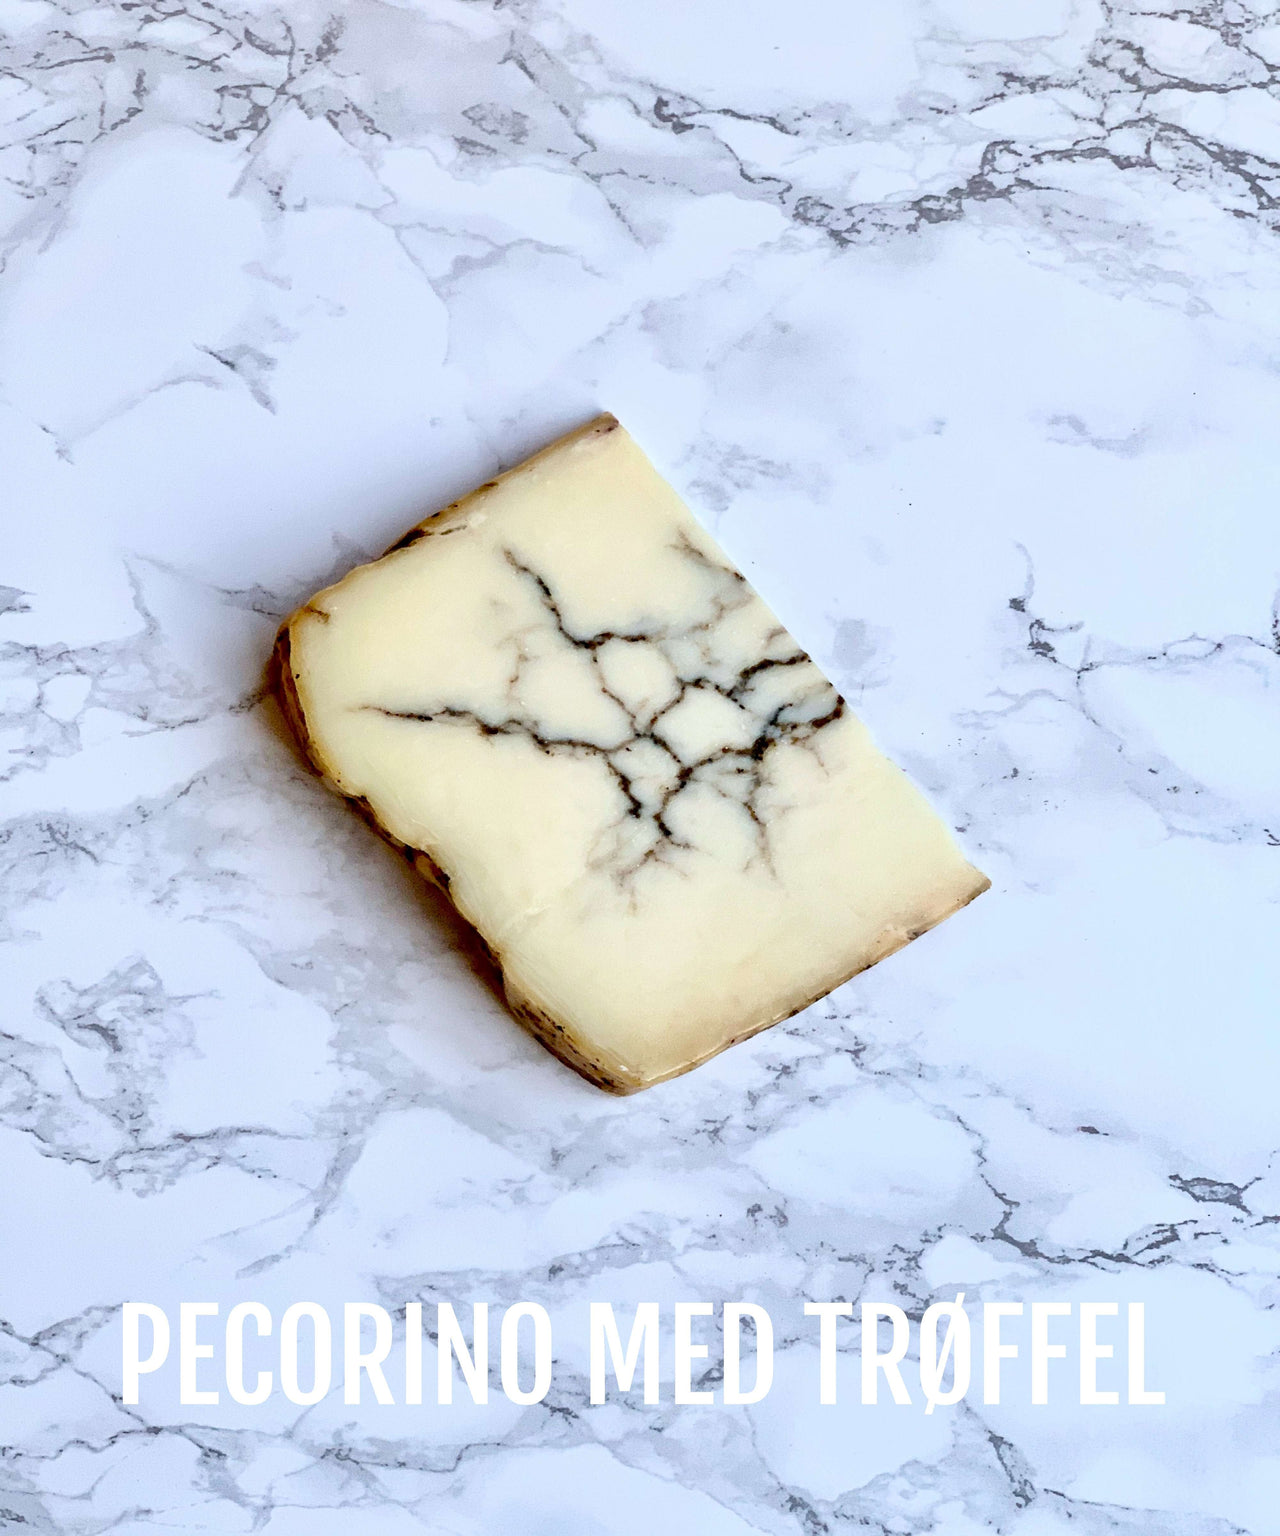 Pecorino med trøffel - Moliterno al tartufo - Osteposten